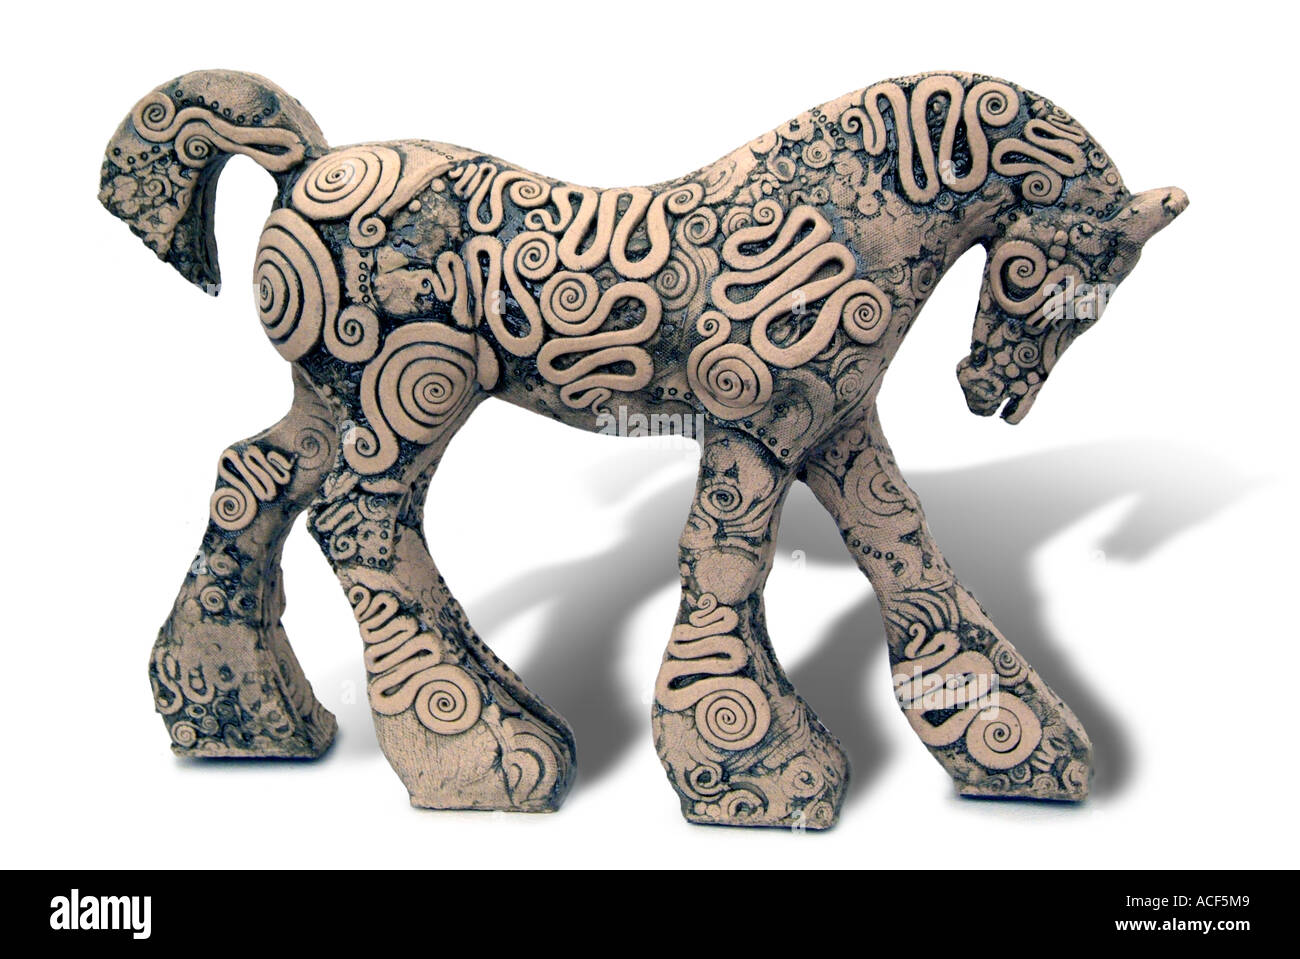 Studio Keramik Ornament Objektkunst de sammeln Sammlerstücke Oberfläche englischen Ton Topf Pferd Pferd Pferde Hengst Shire Mähne Schweif Stockfoto